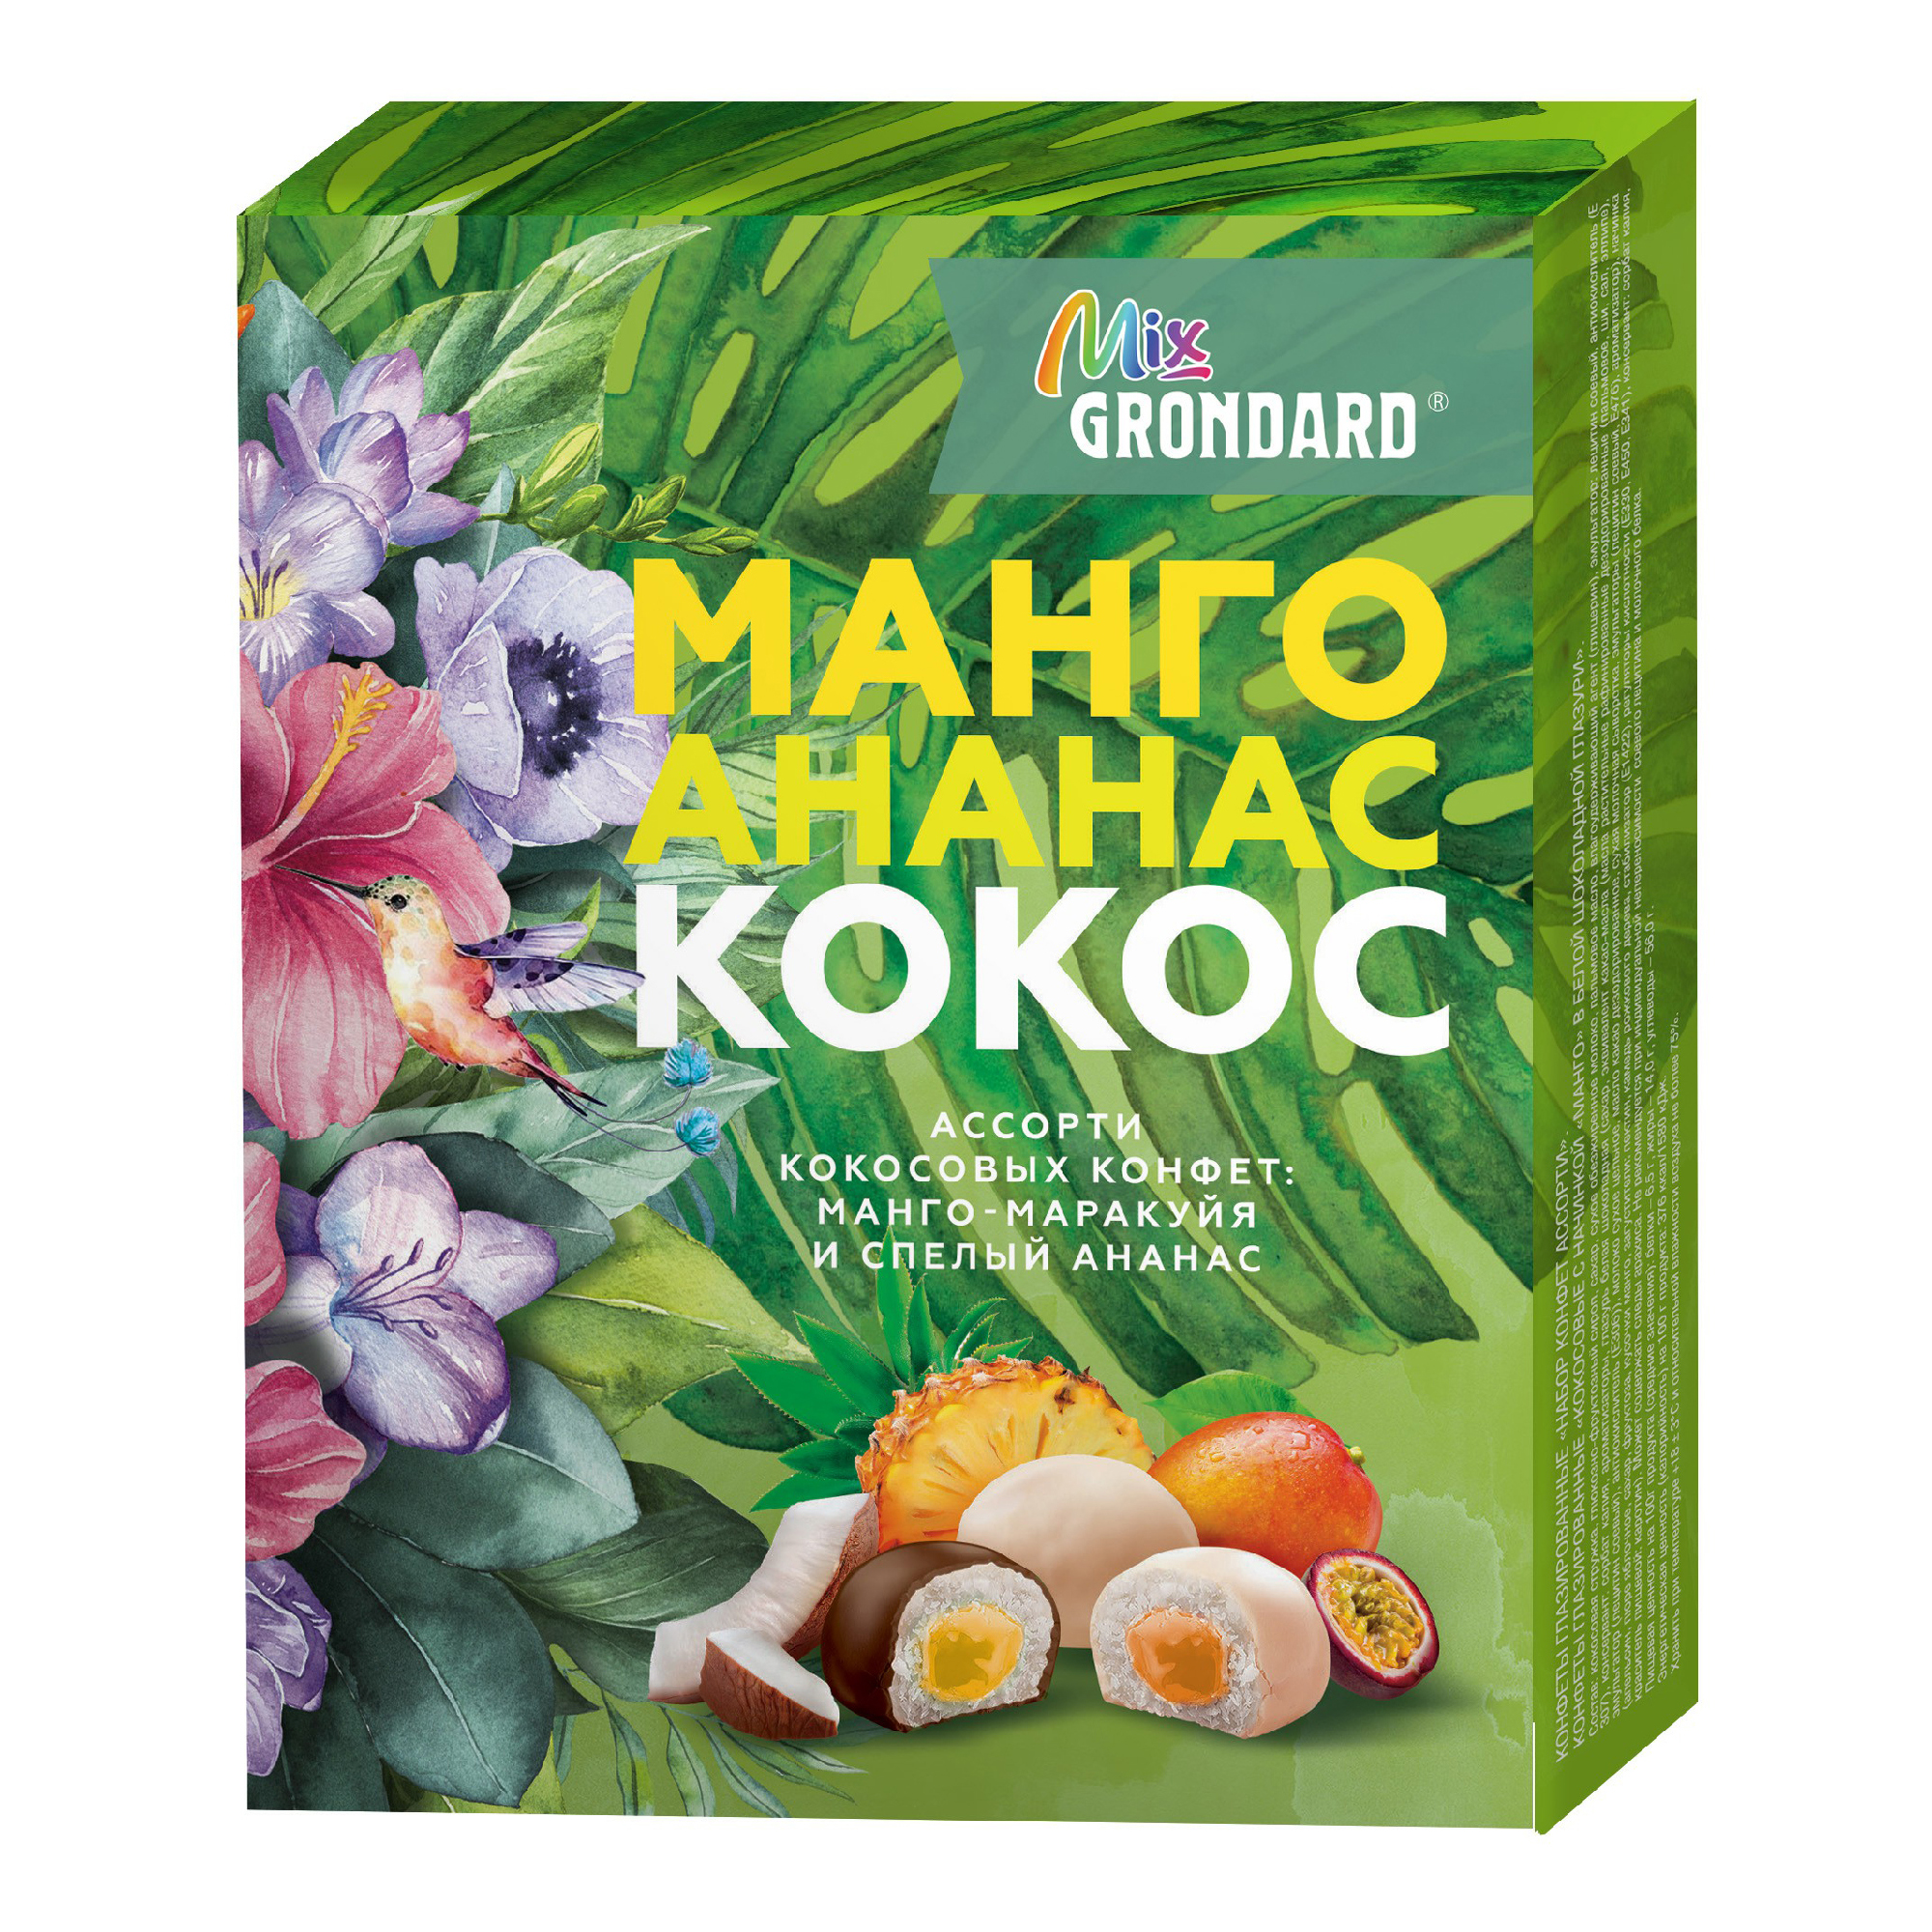 Набор конфет Grondard Mix кокосовые Ассорти манго-маракуйя-апельсин 126 г